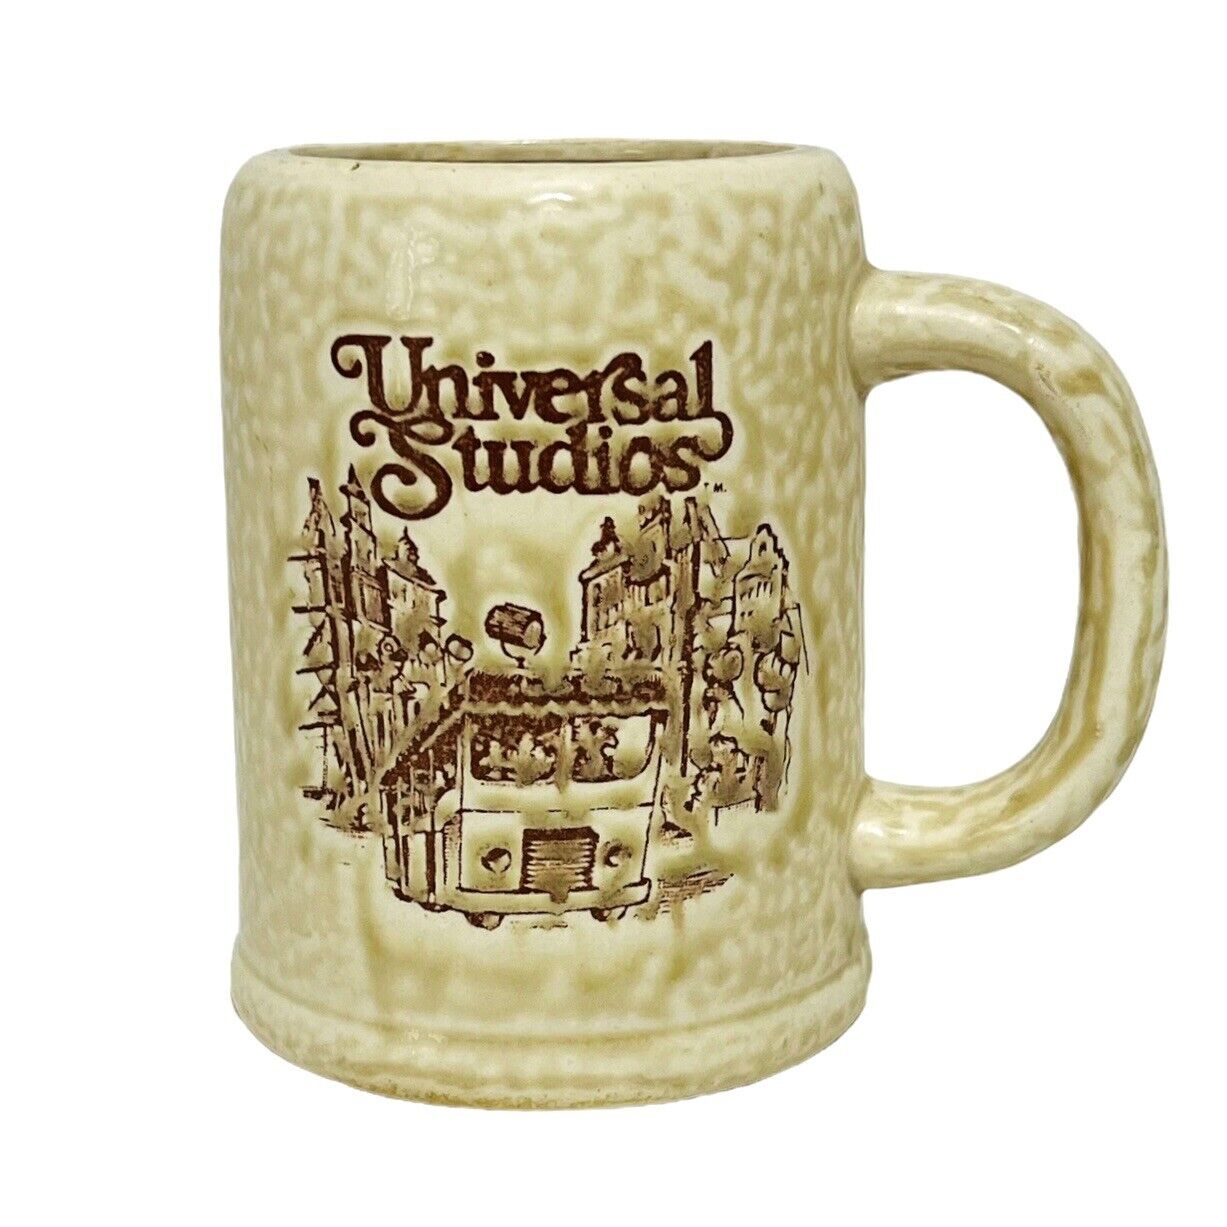 Vintage Universal Studios Ceramic Coffee Tea Beer Mug Stein Made In Japan